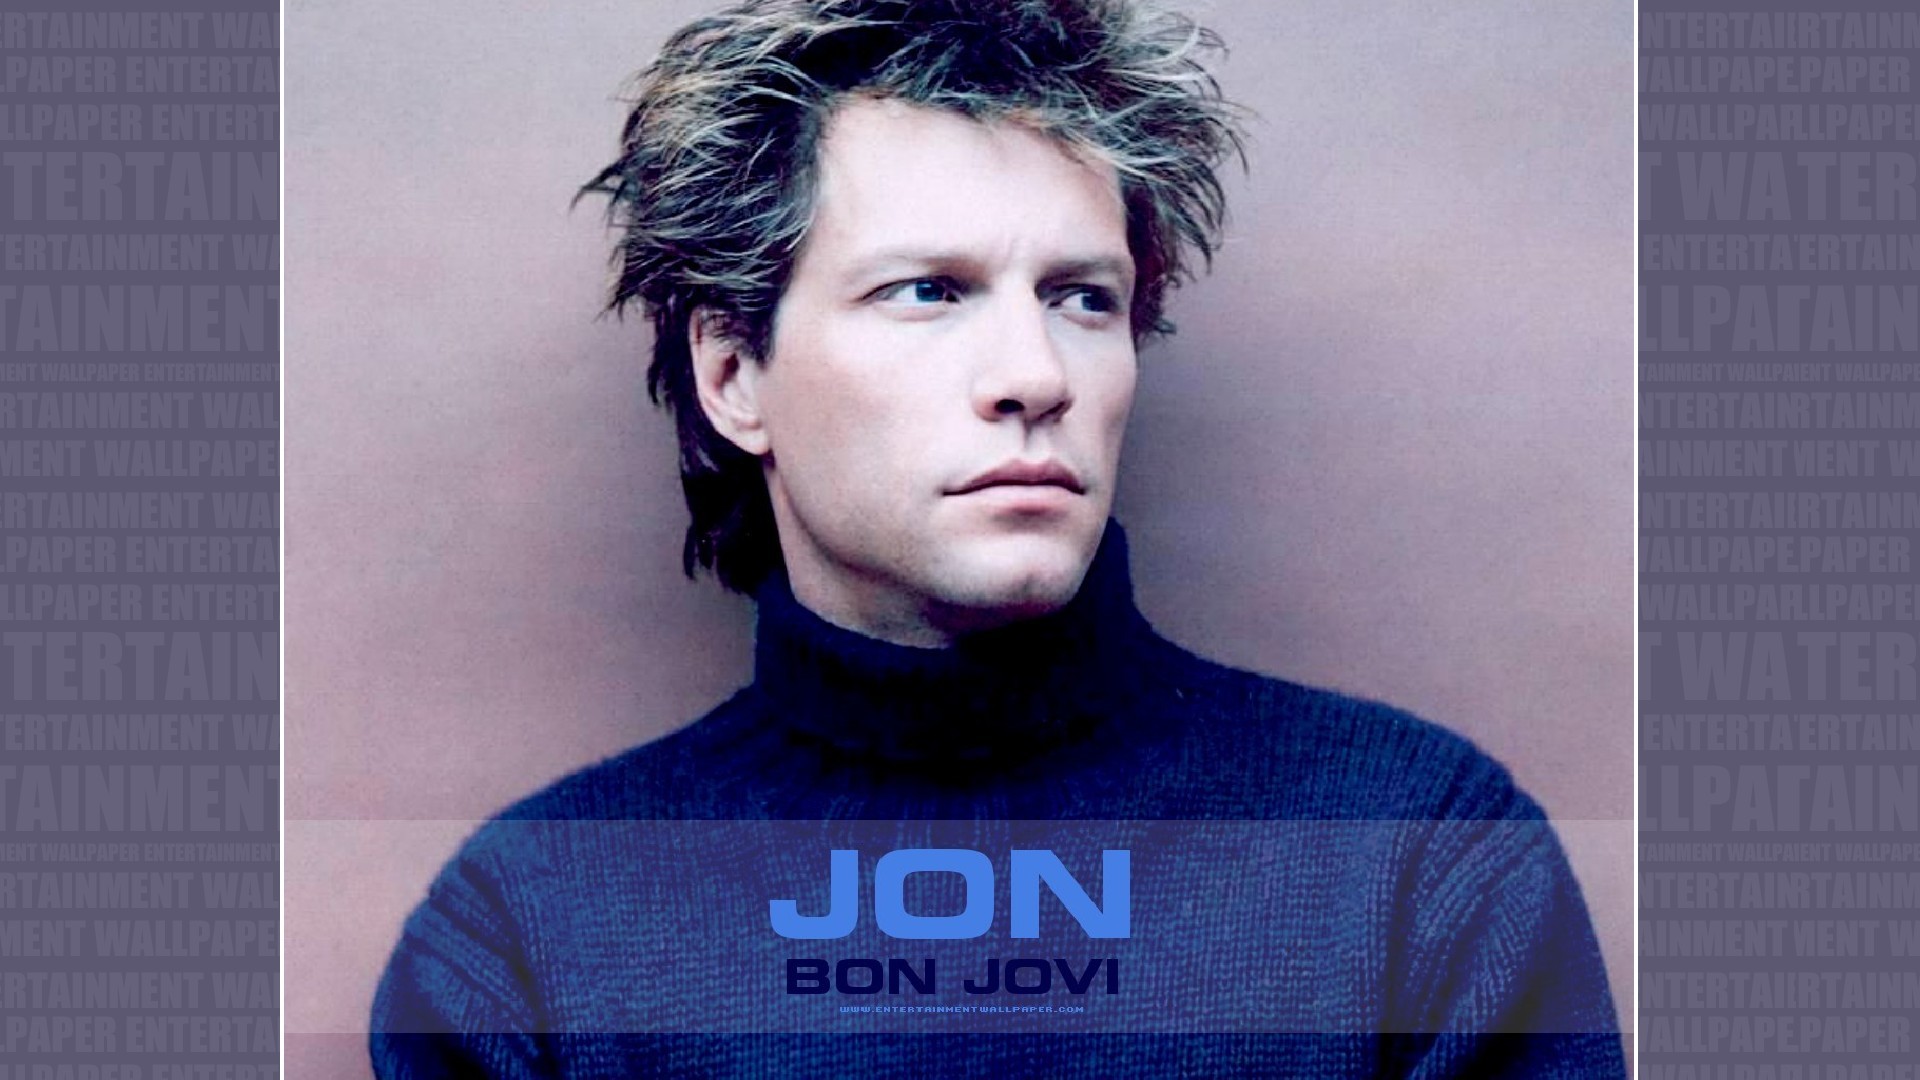 1920x1080 Jon Bon Jovi Wallpaper - Original size, download now.